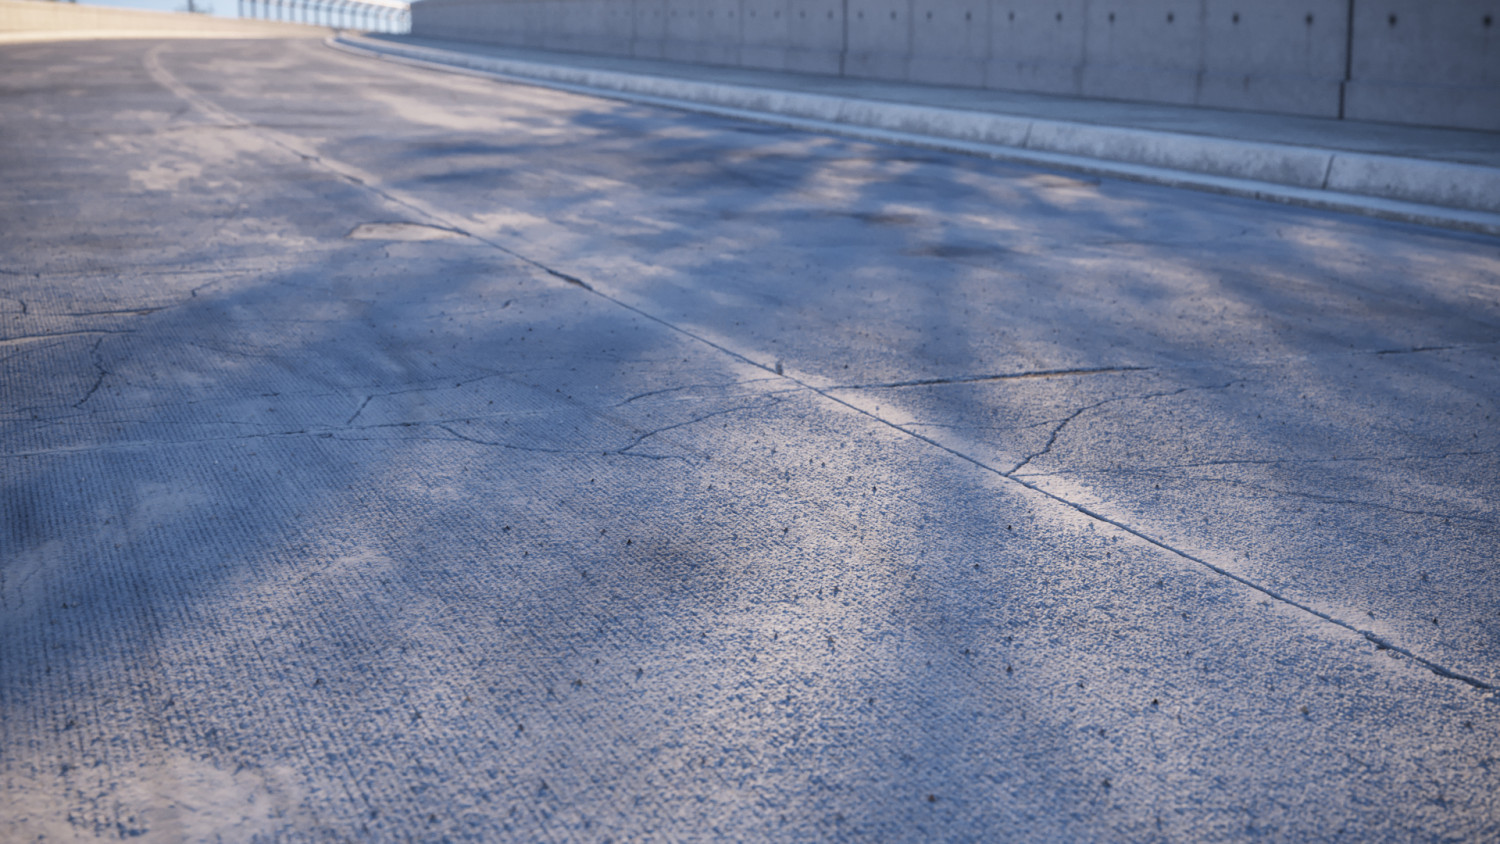 Dry damaged concrete road texture